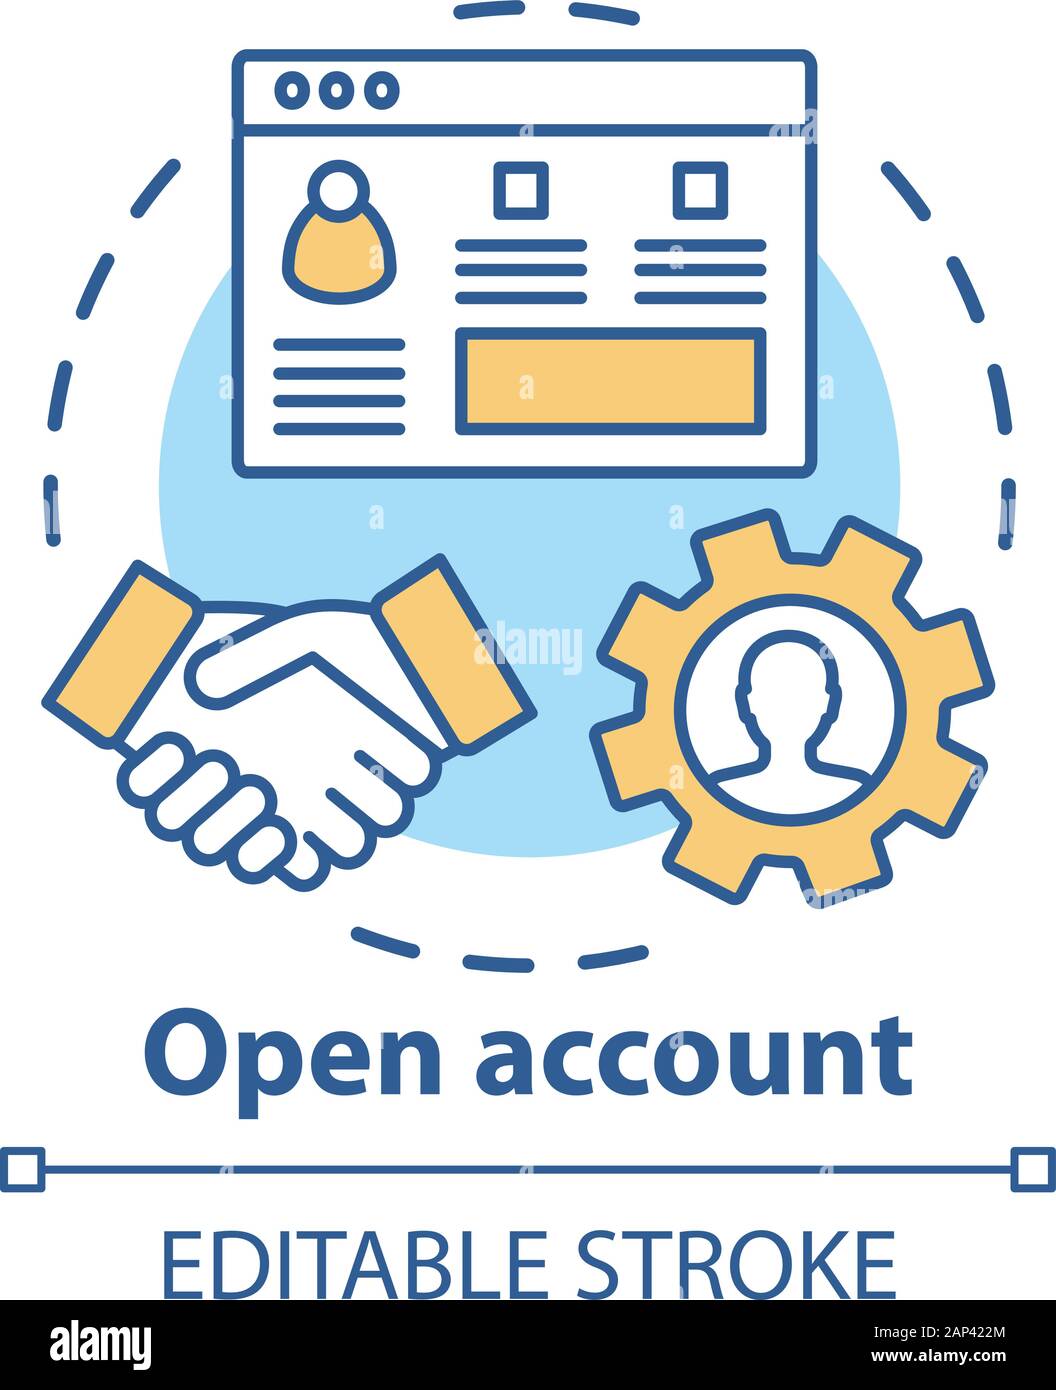 Open bank account concept icon. Savings idea thin line